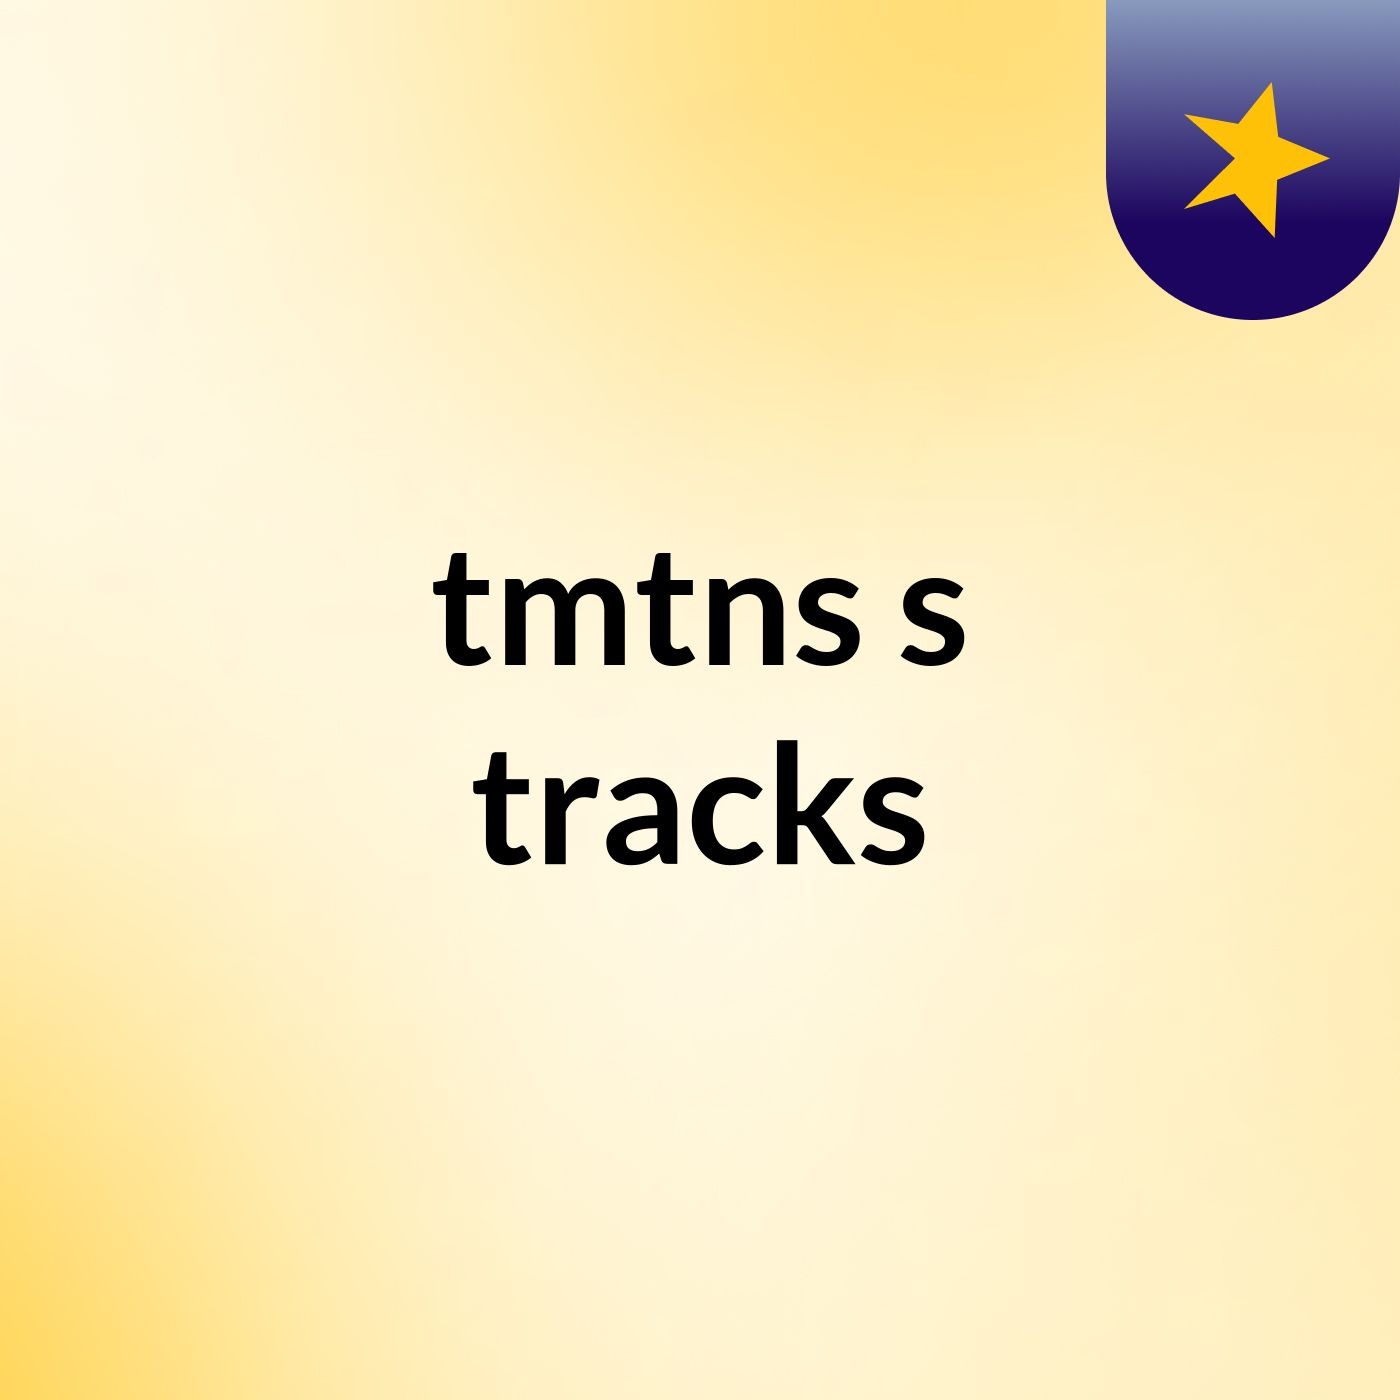 tmtns's tracks